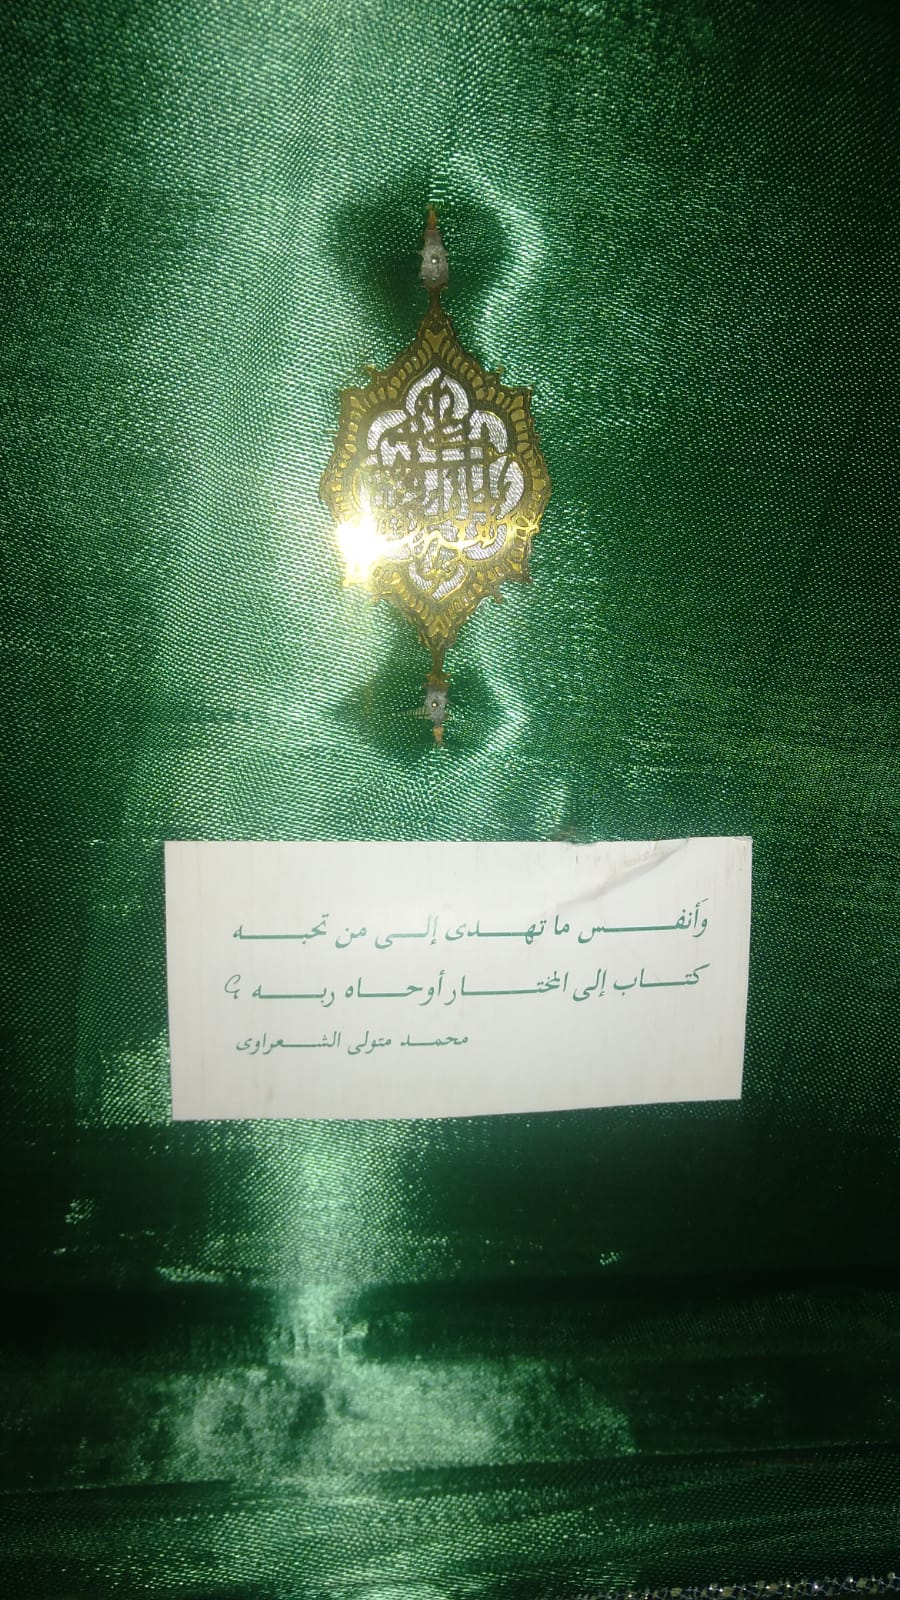 أحد المصاحف التي أهدها الشيخ الشعراوي لأحفاده